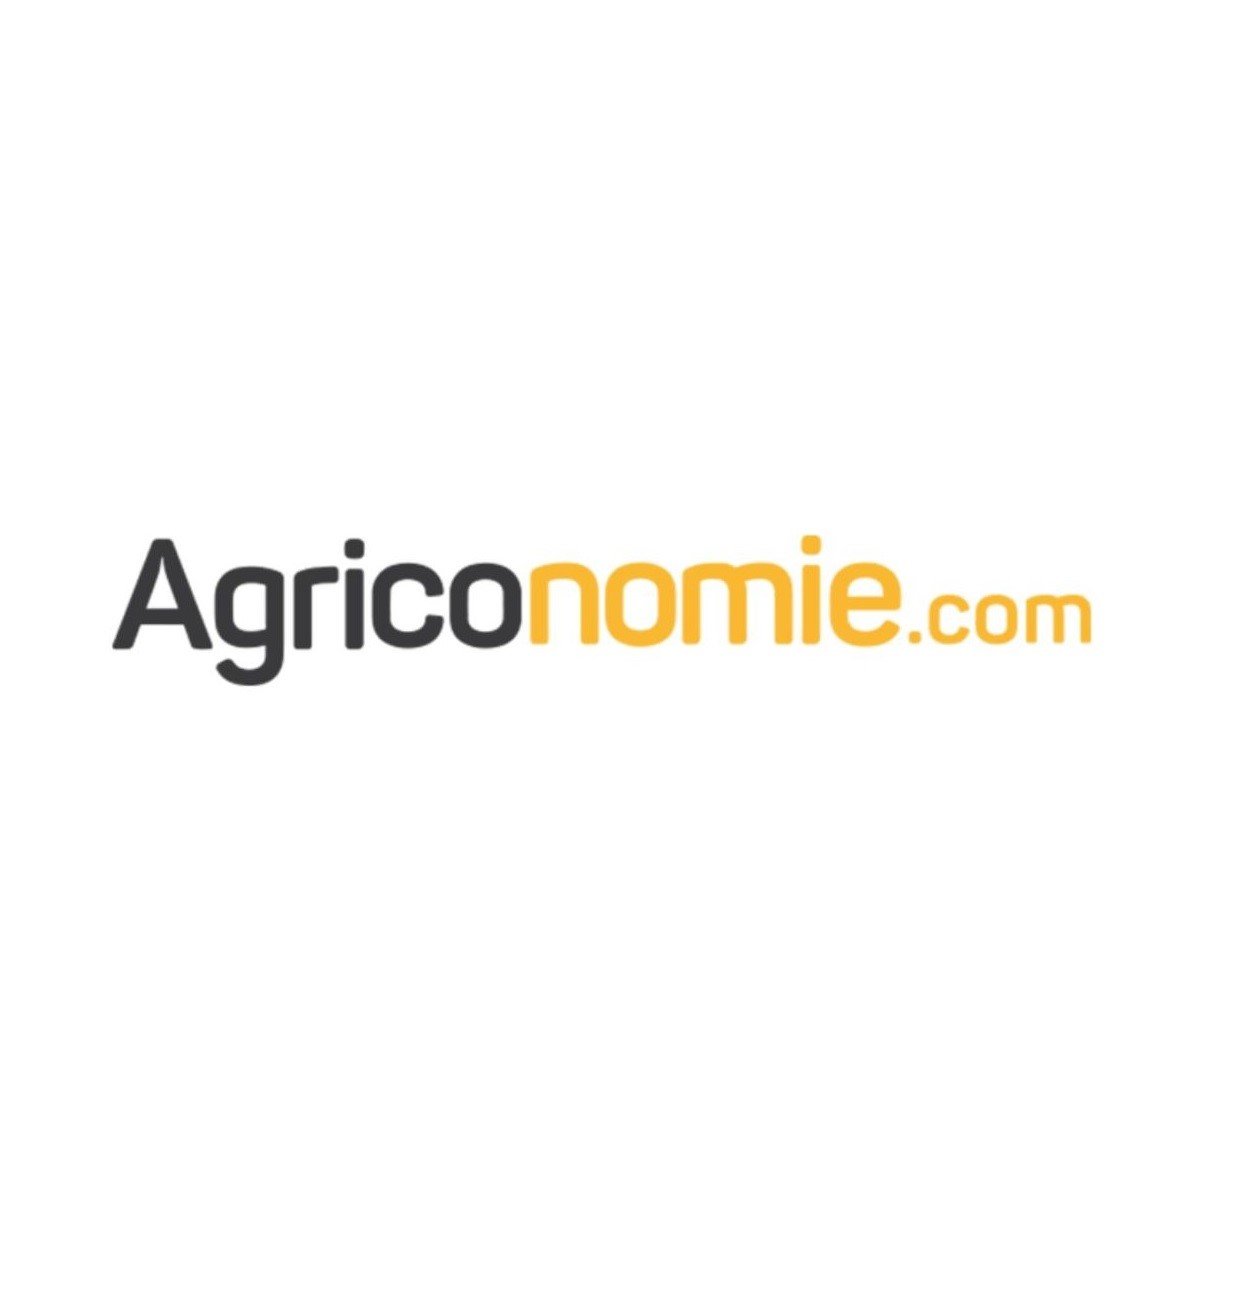 levee-fonds-agriconomie.com-agritech-1200x630.jpg